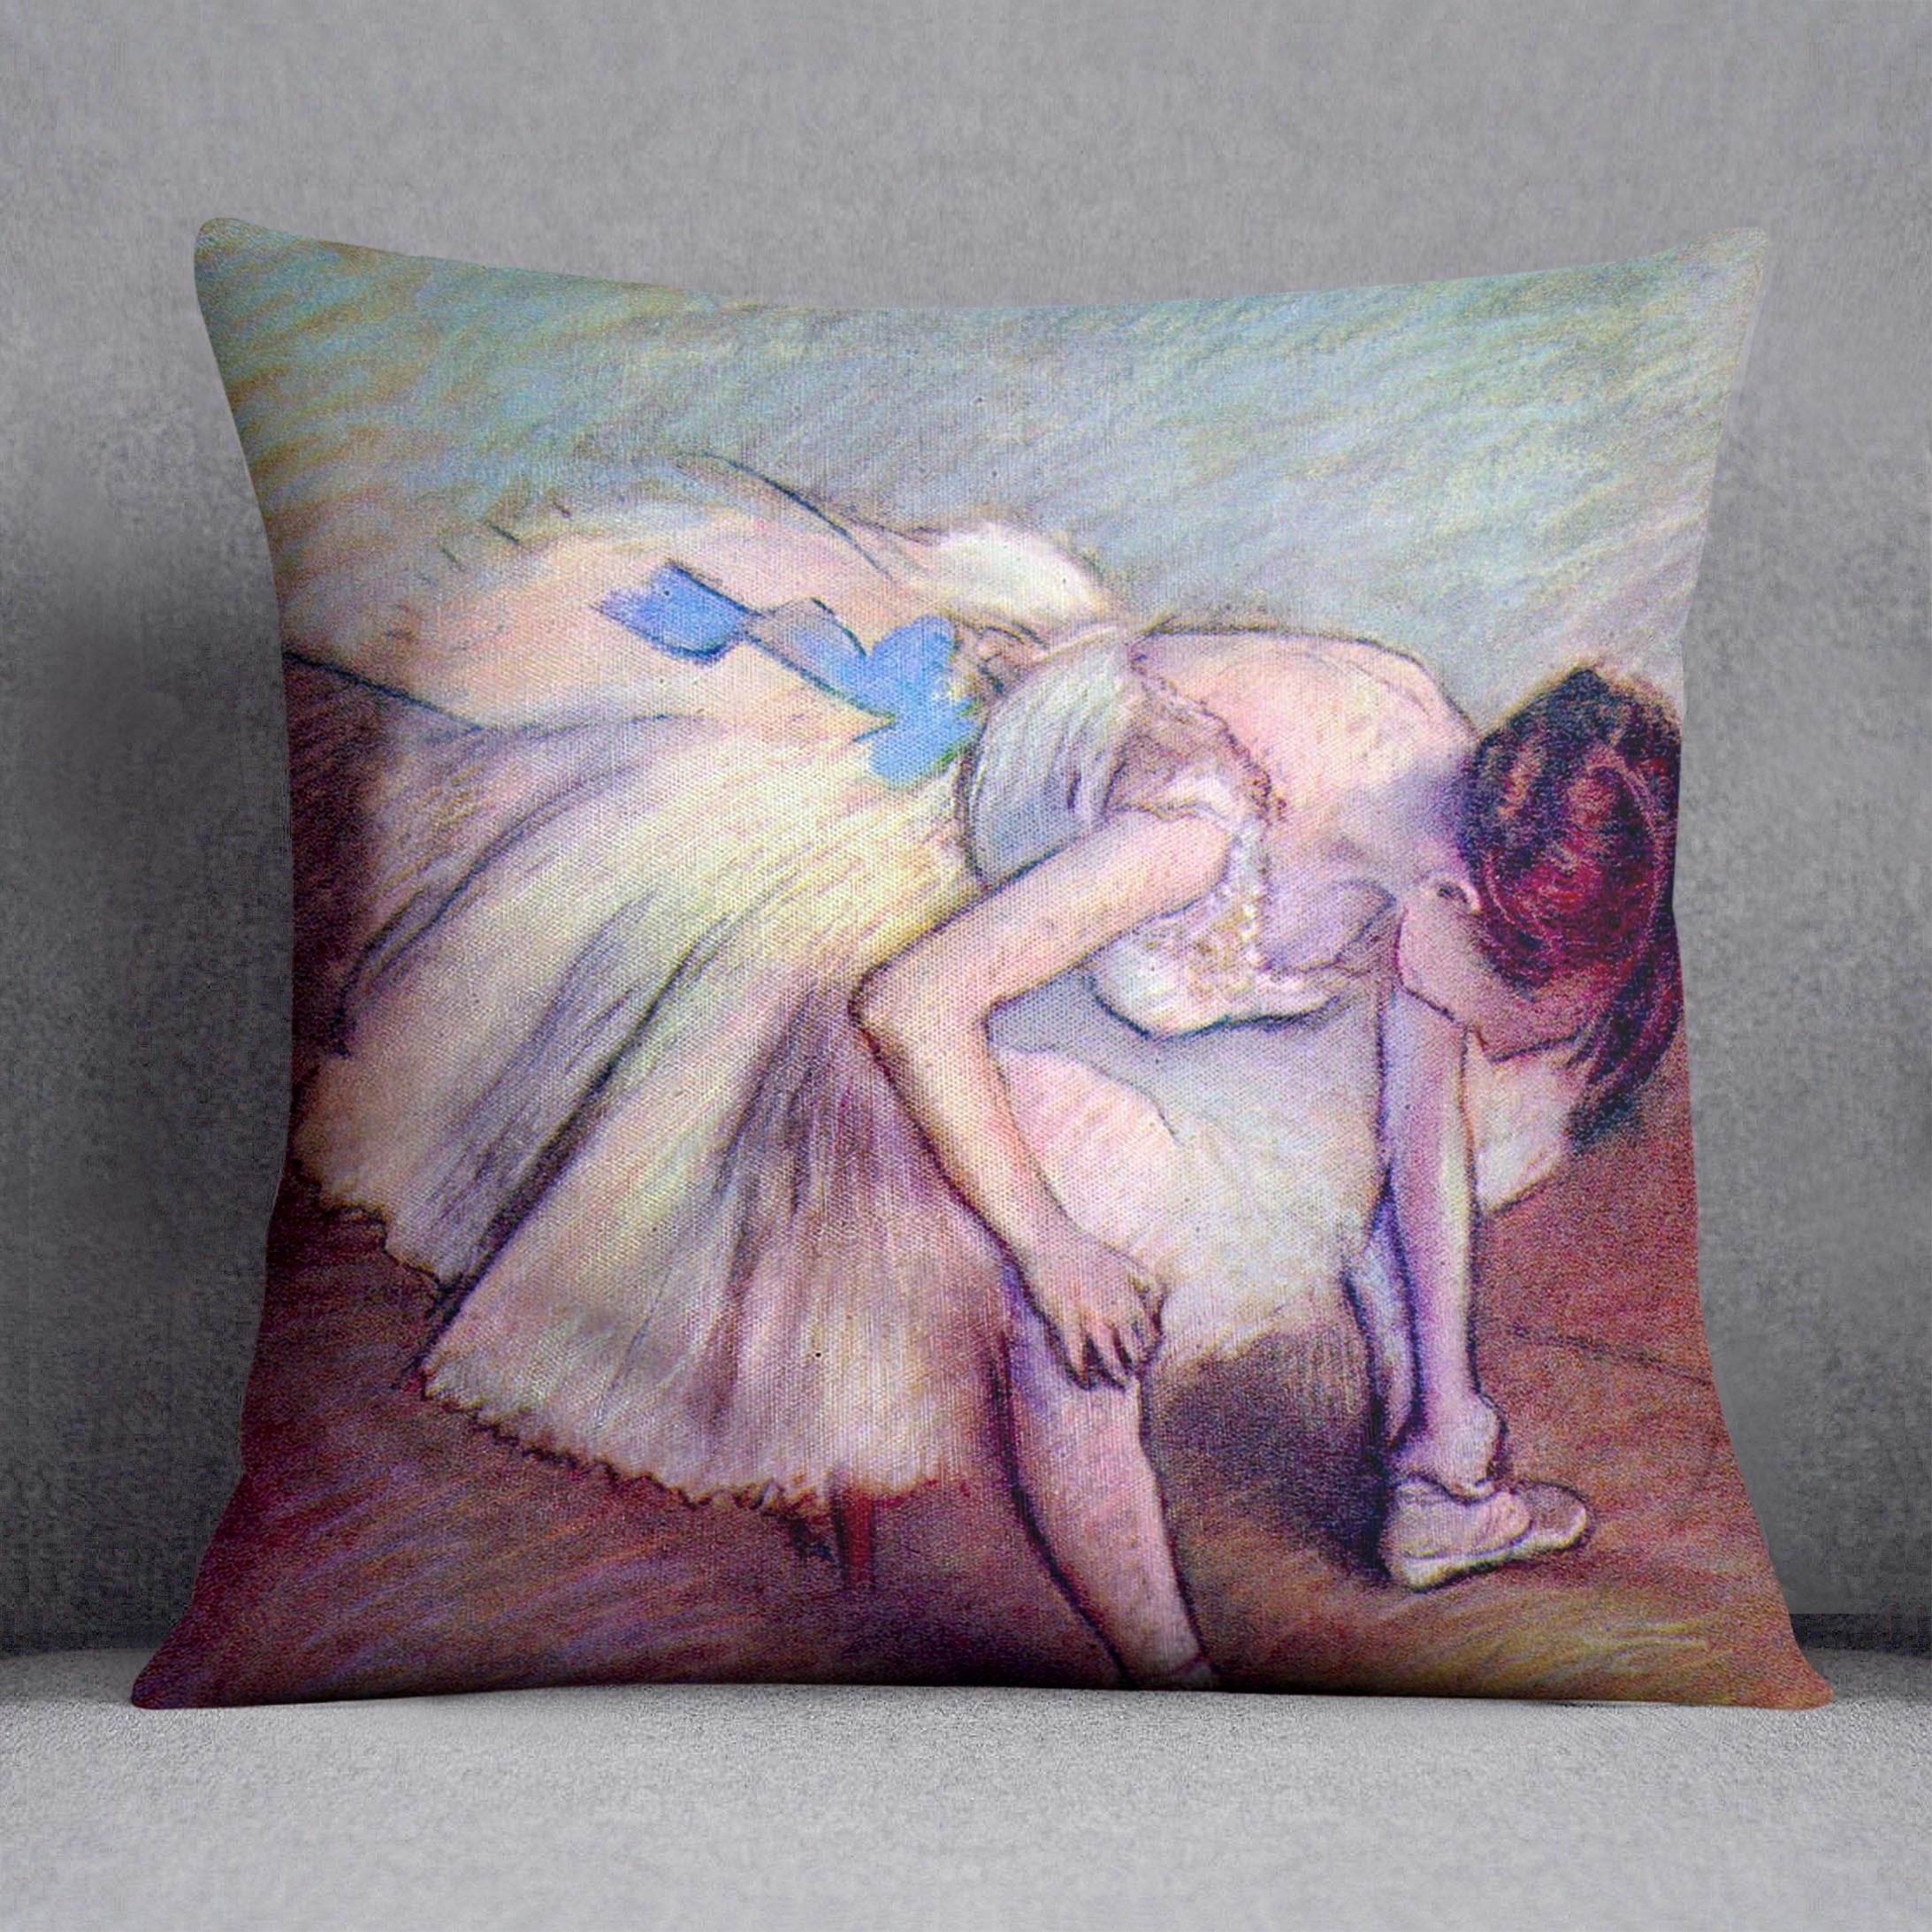 Dancer 2 by Degas Cushion